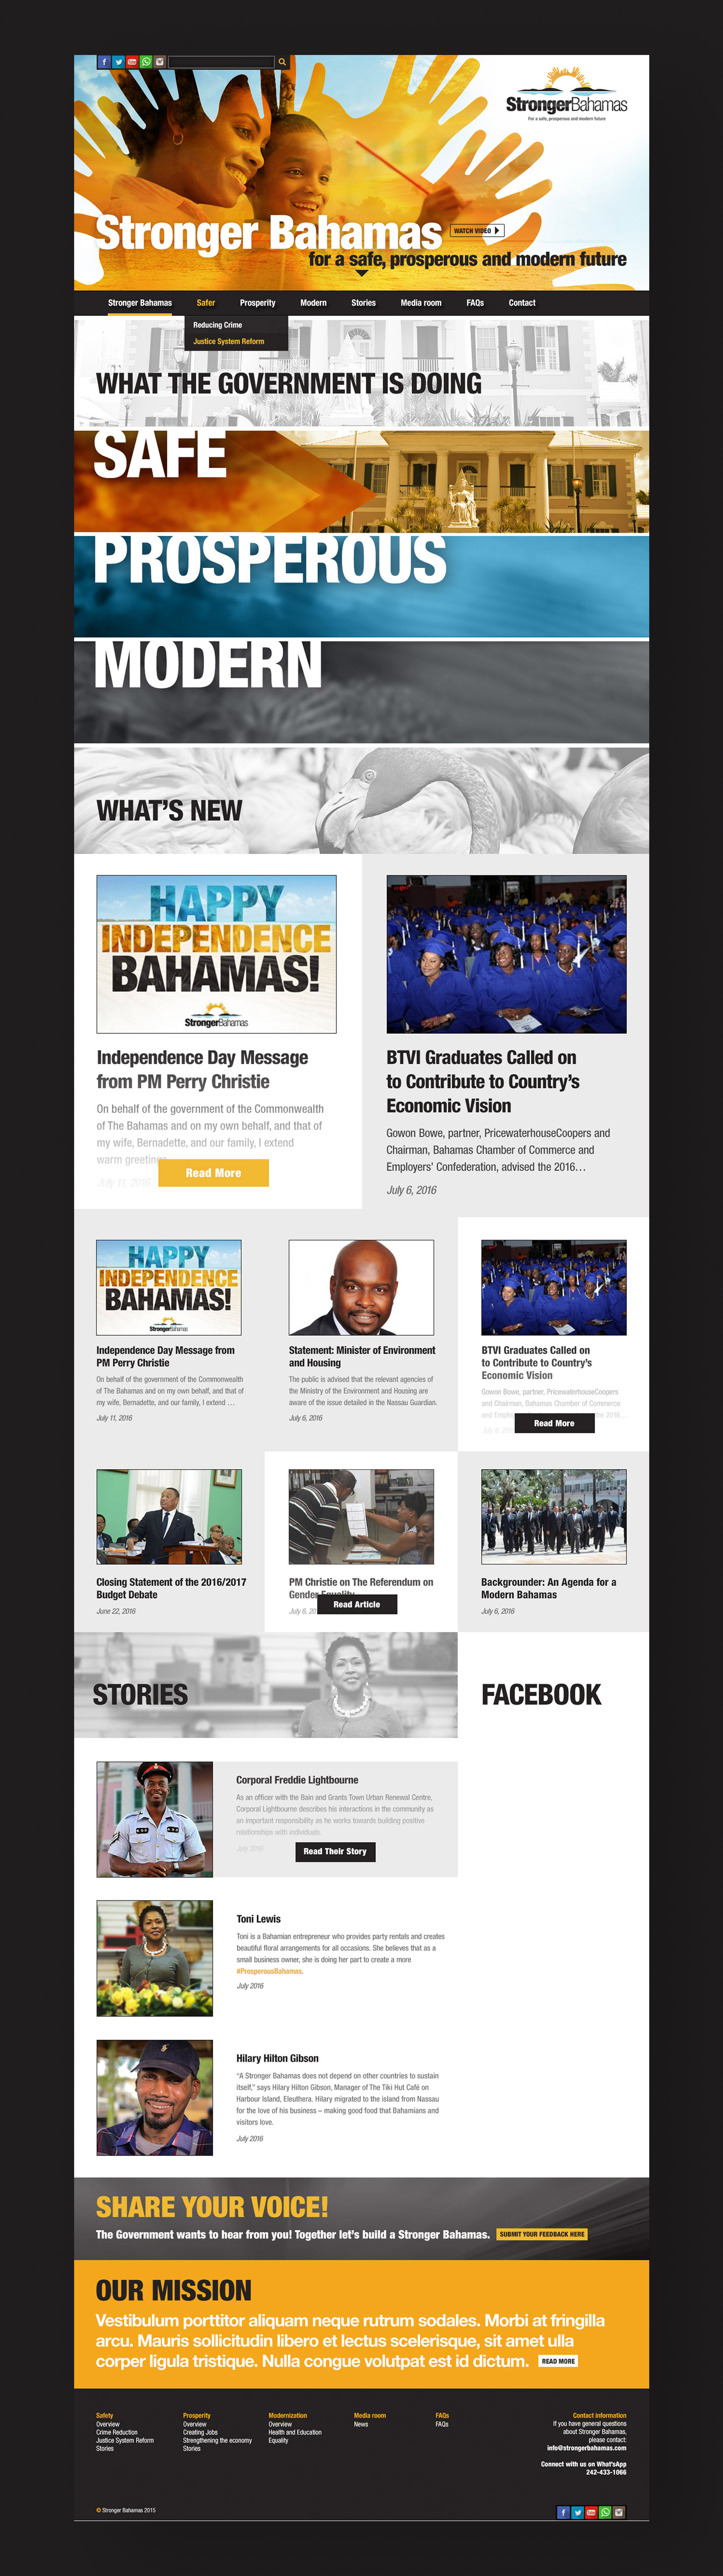 Stronger Bahamas Full Website